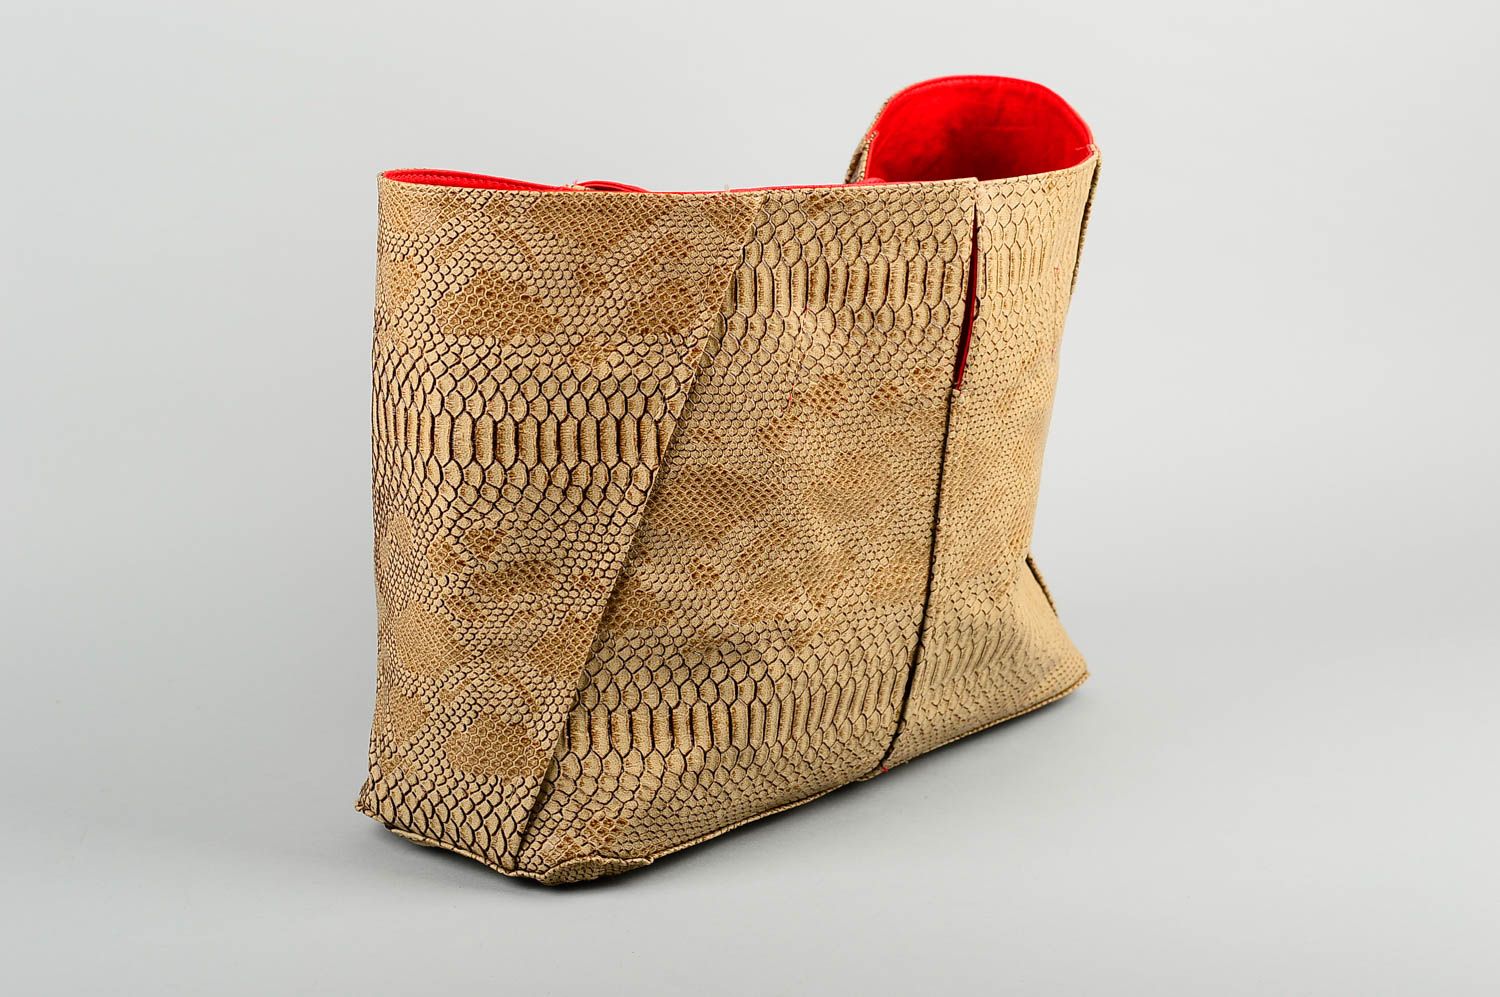 Сумка ручной работы сумка на плечо из кожзама женская сумка красная стильная фото 1